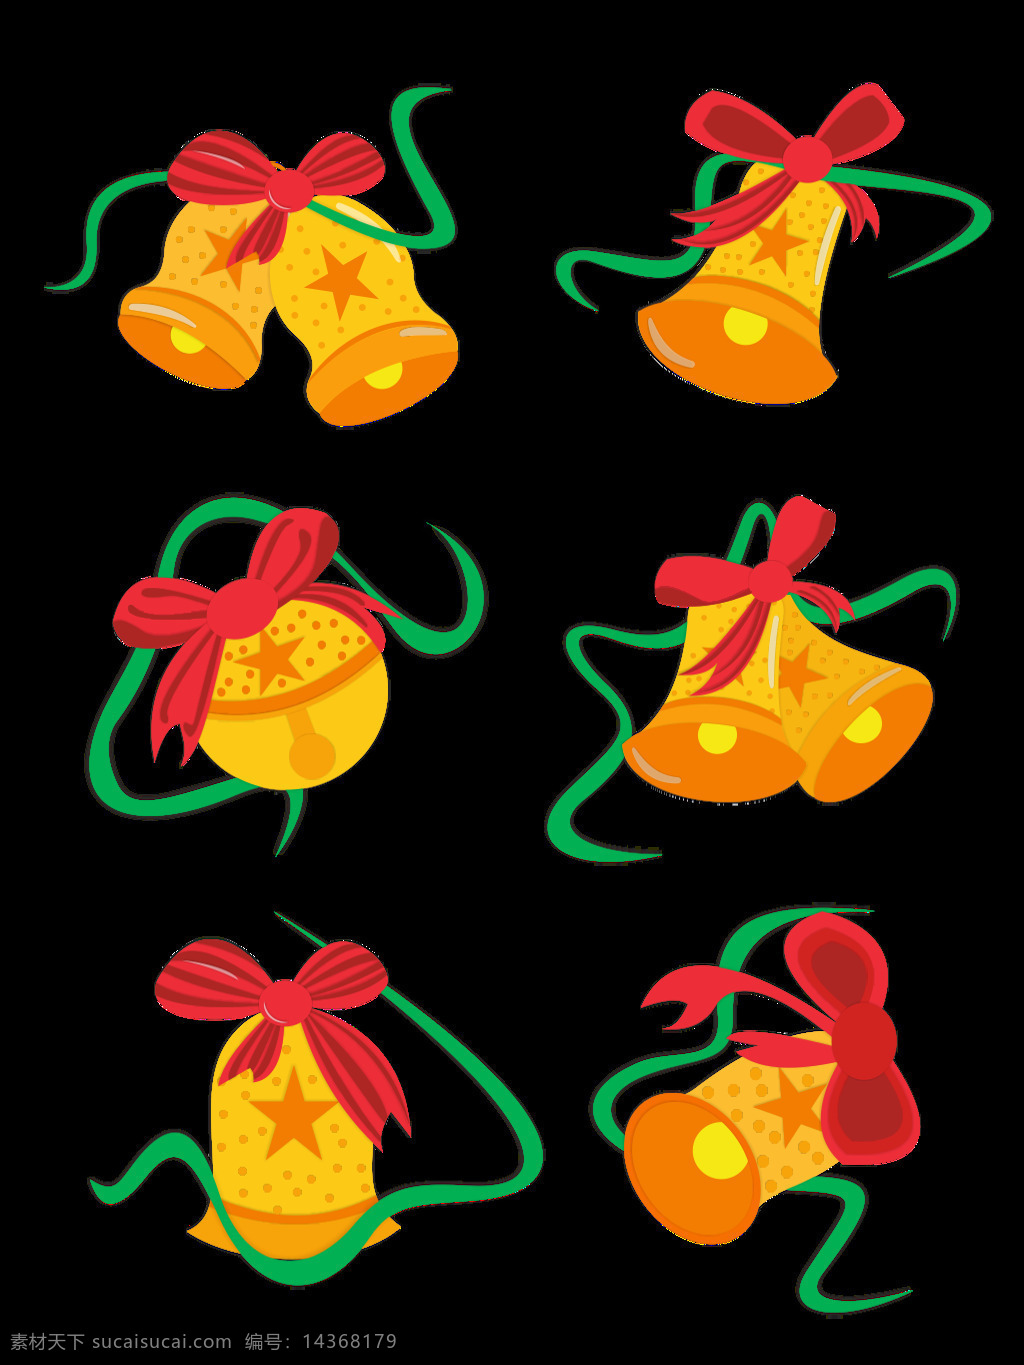 圣诞节 铃铛 元素 卡通 可爱 黄色 套 图 节日 元素设计